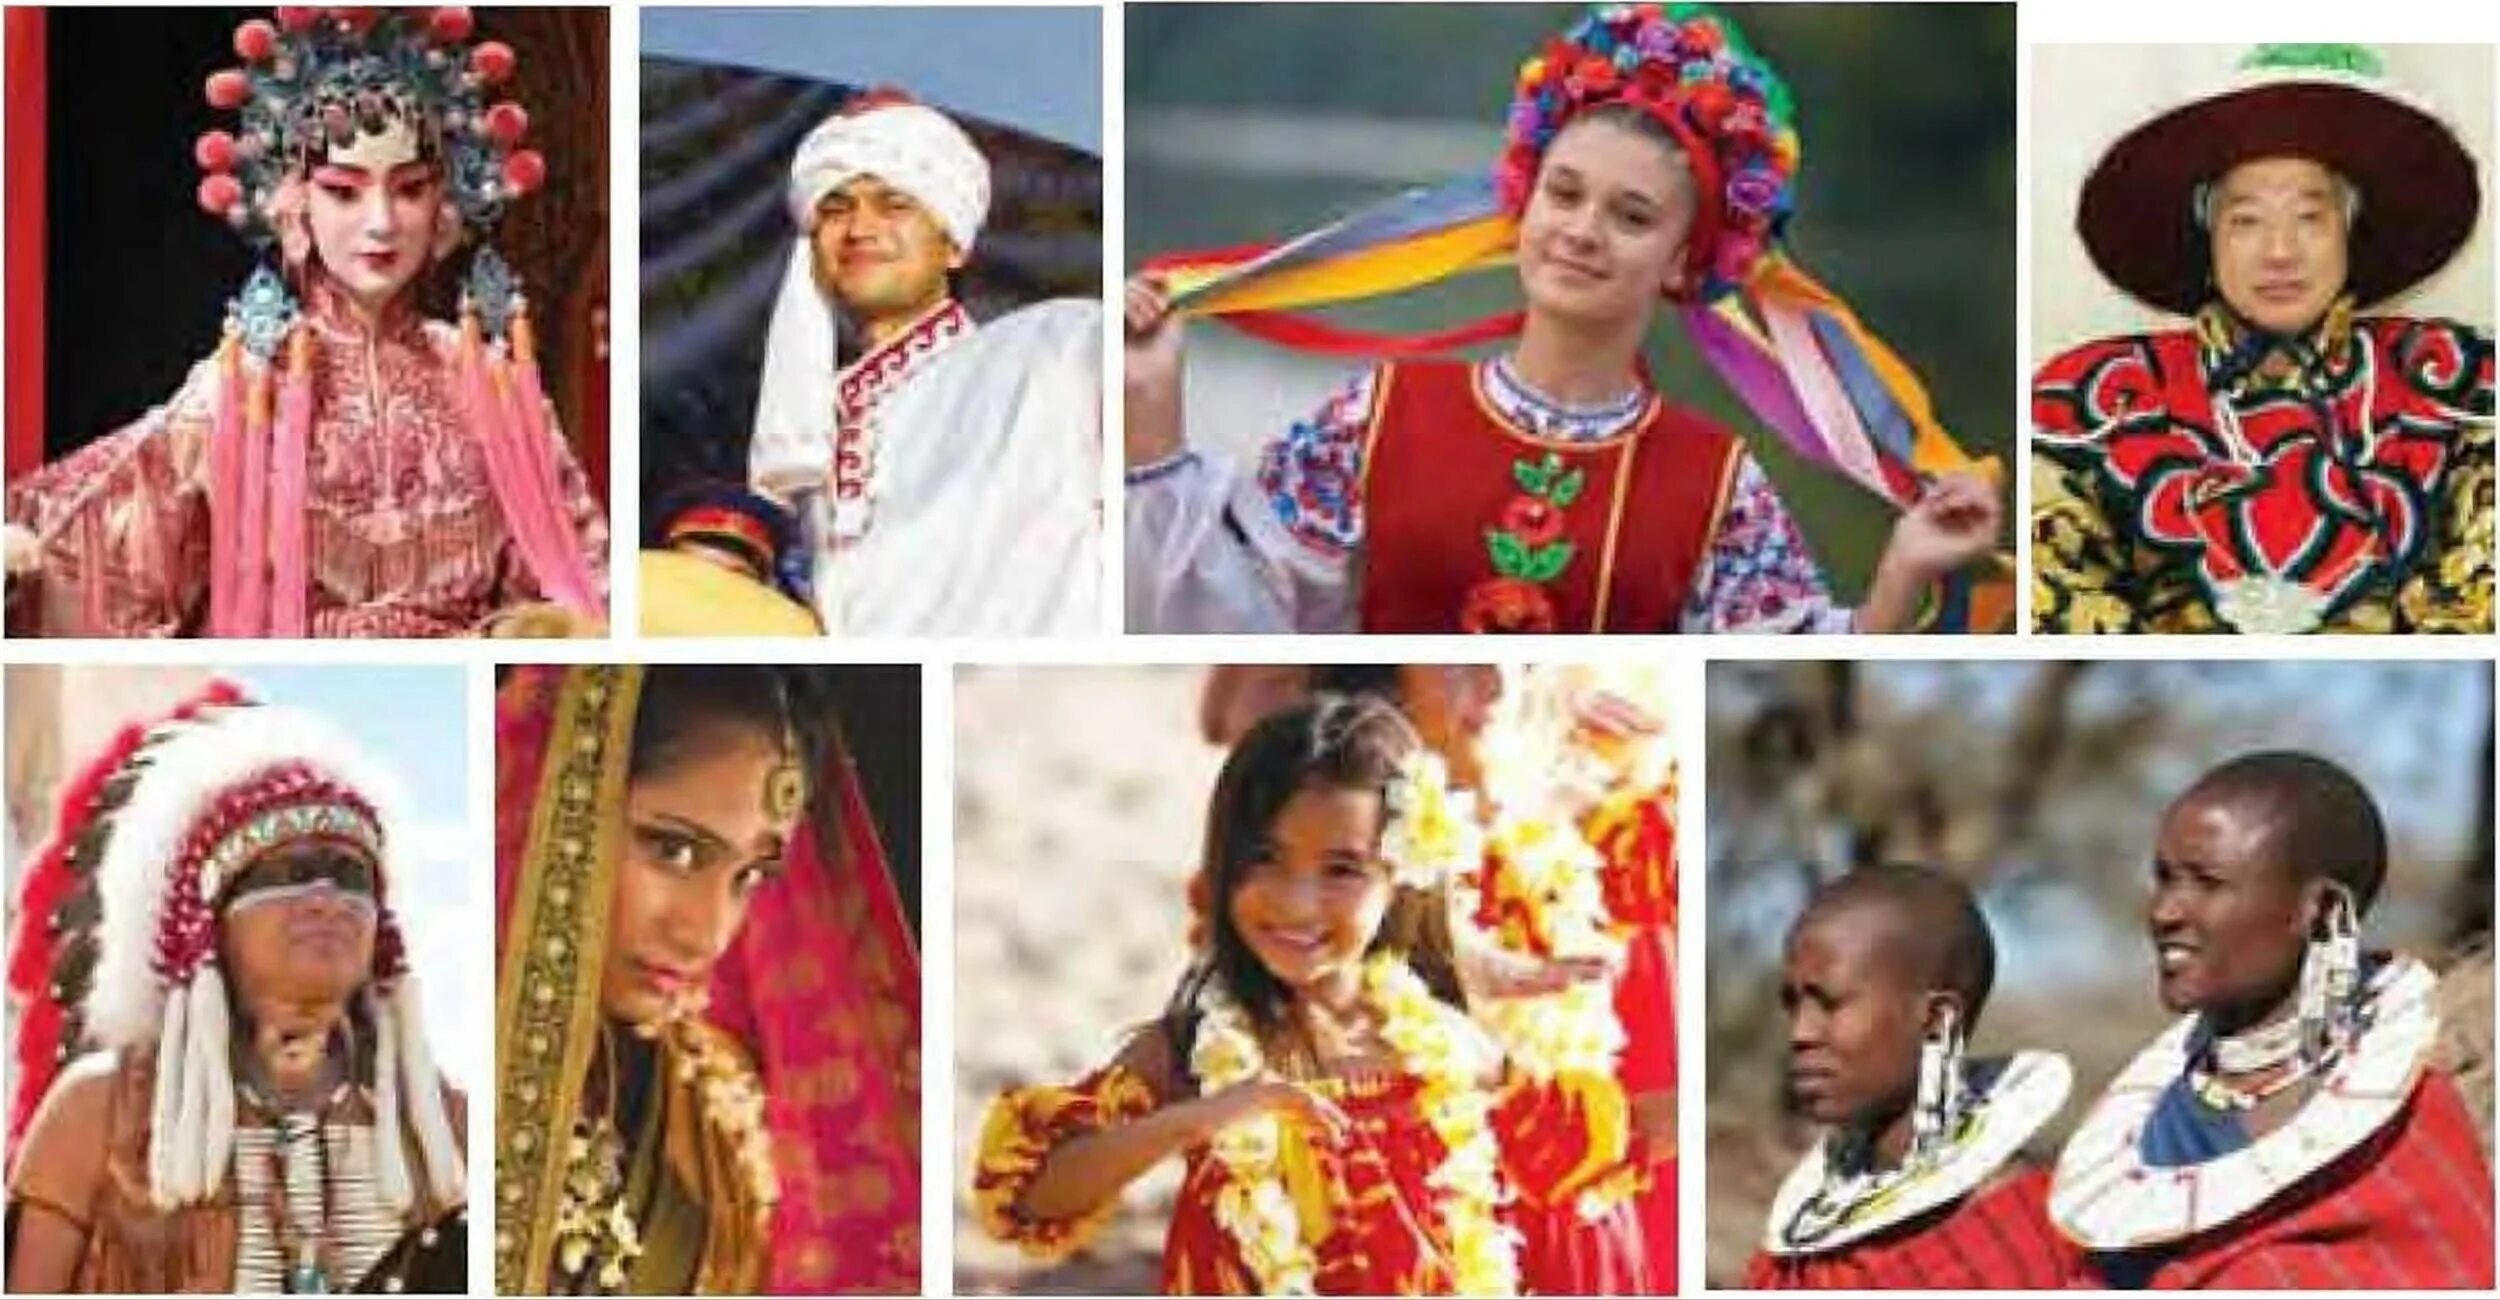 Представители различных народов. Народы земли. Разные народы. Люди разных культур. Этническое разнообразие.